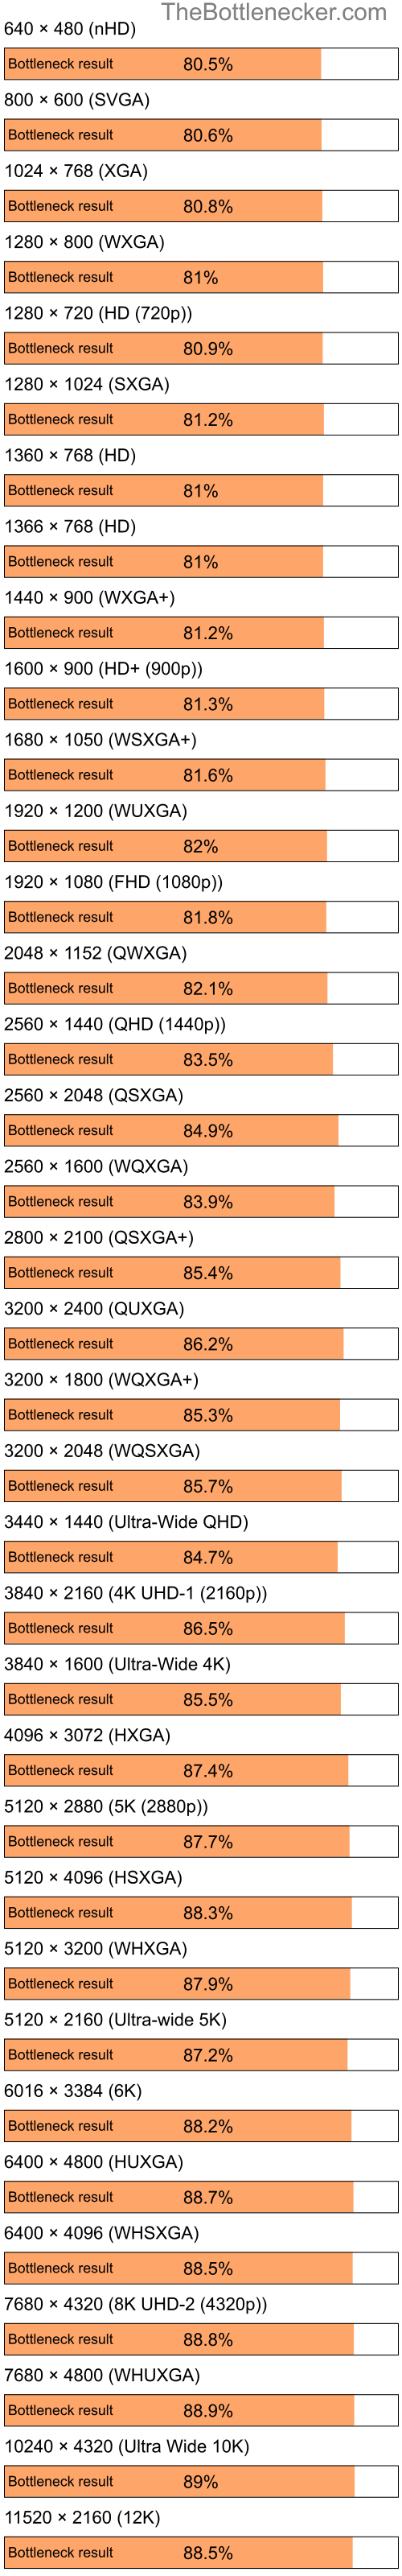 Bottleneck results by resolution for Intel Celeron and NVIDIA GeForce 6150 in General Tasks